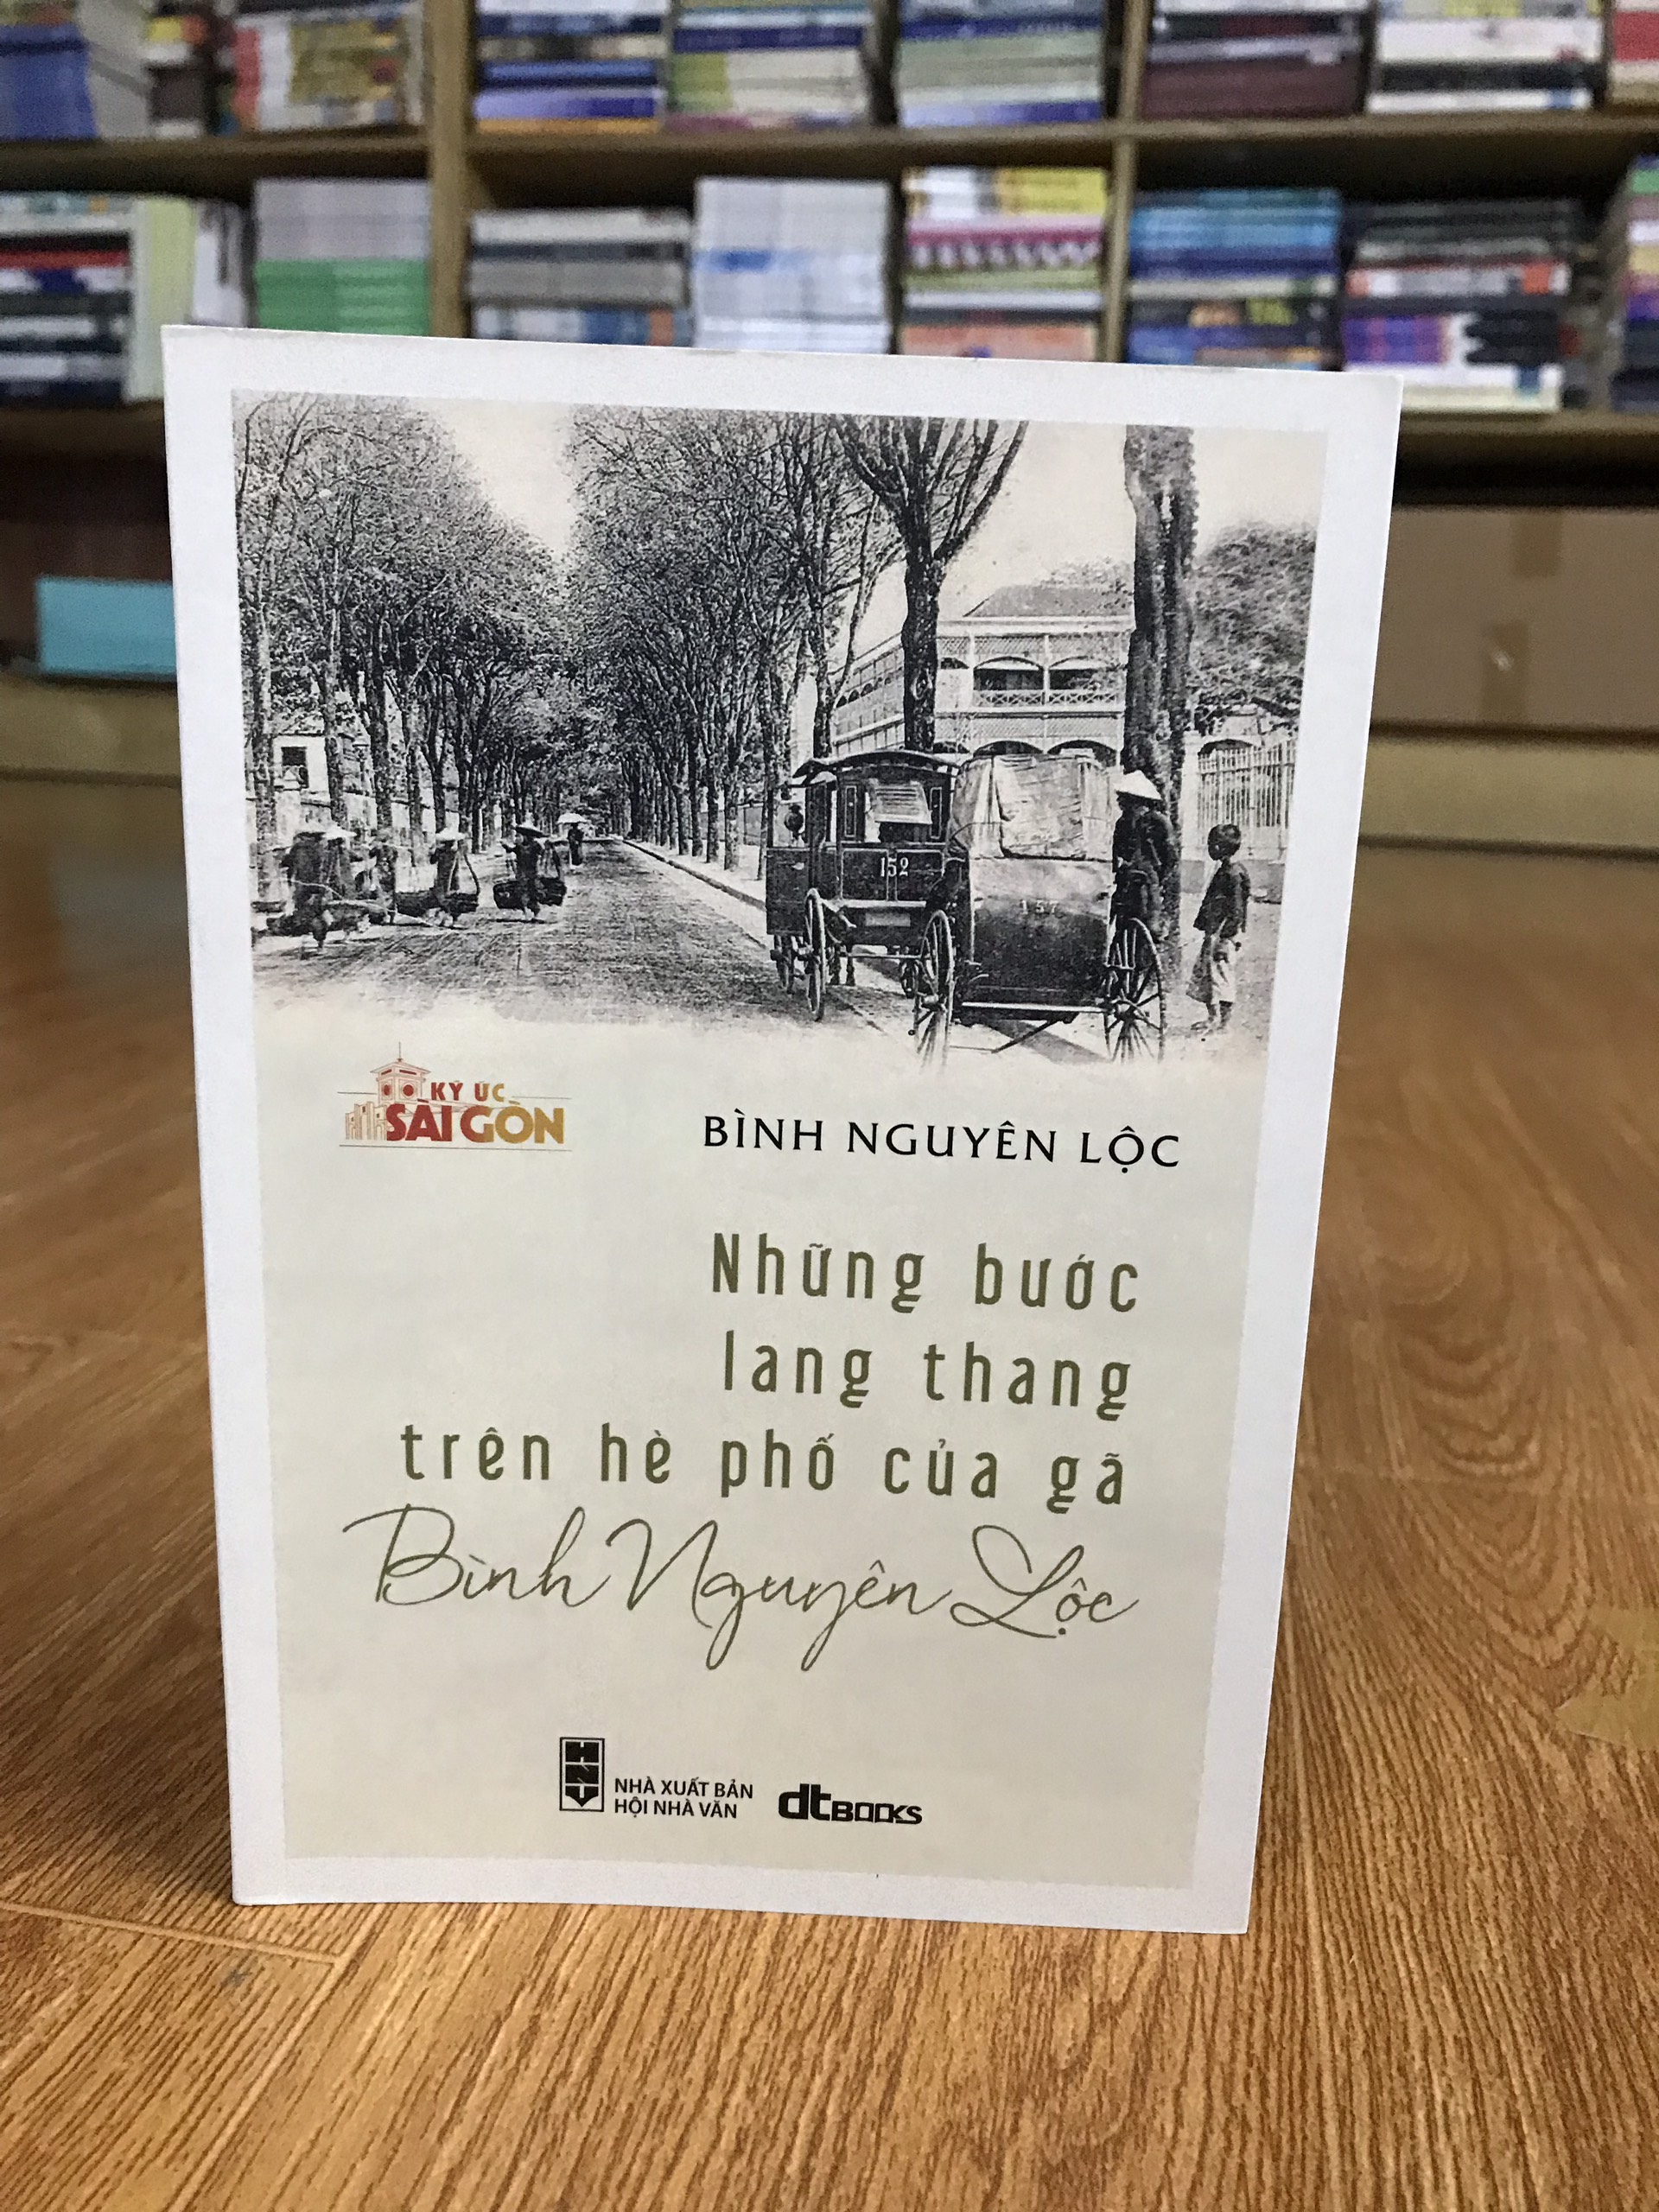 Combo sách KÝ ỨC SÀI GÒN XƯA: đất Sài Gòn và sinh hoạt của người Sài Gòn xưa + Những bước lang thang trên hè phố của gã Bình Nguyên Lộc (tặng kèm bookmark)